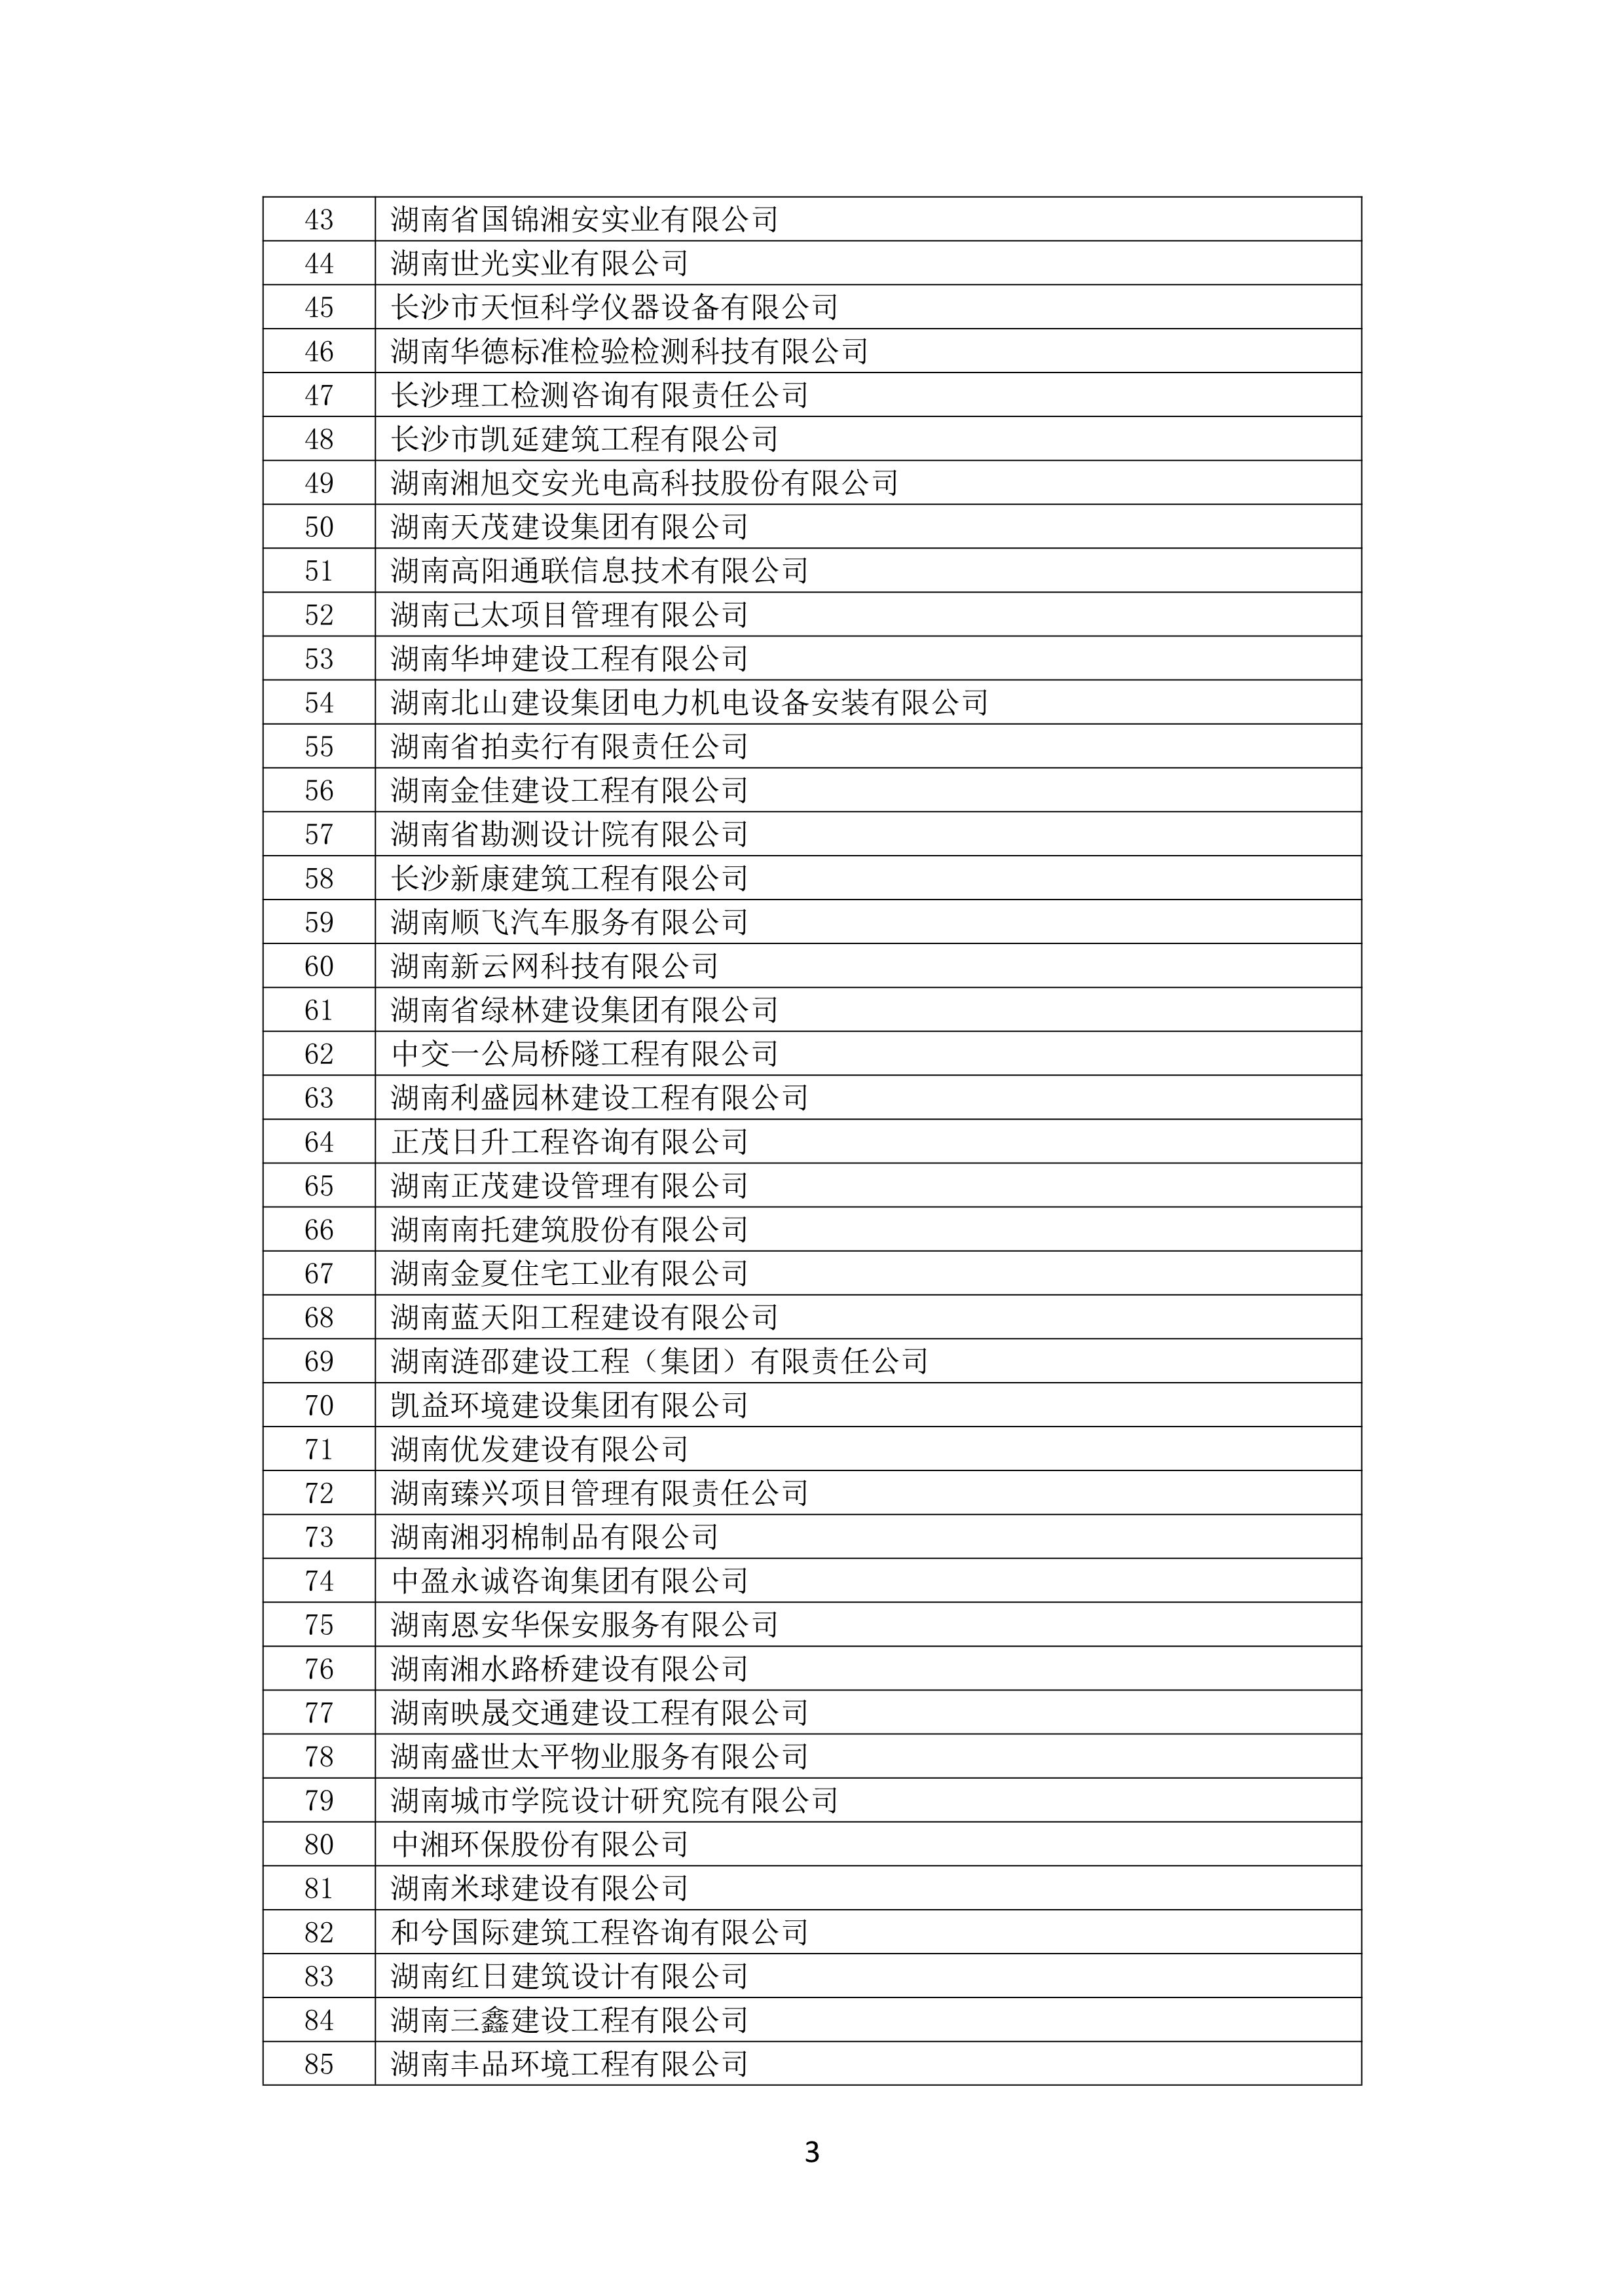 2021 年(nián)度湖南省守合同重信用企業名單_4.png